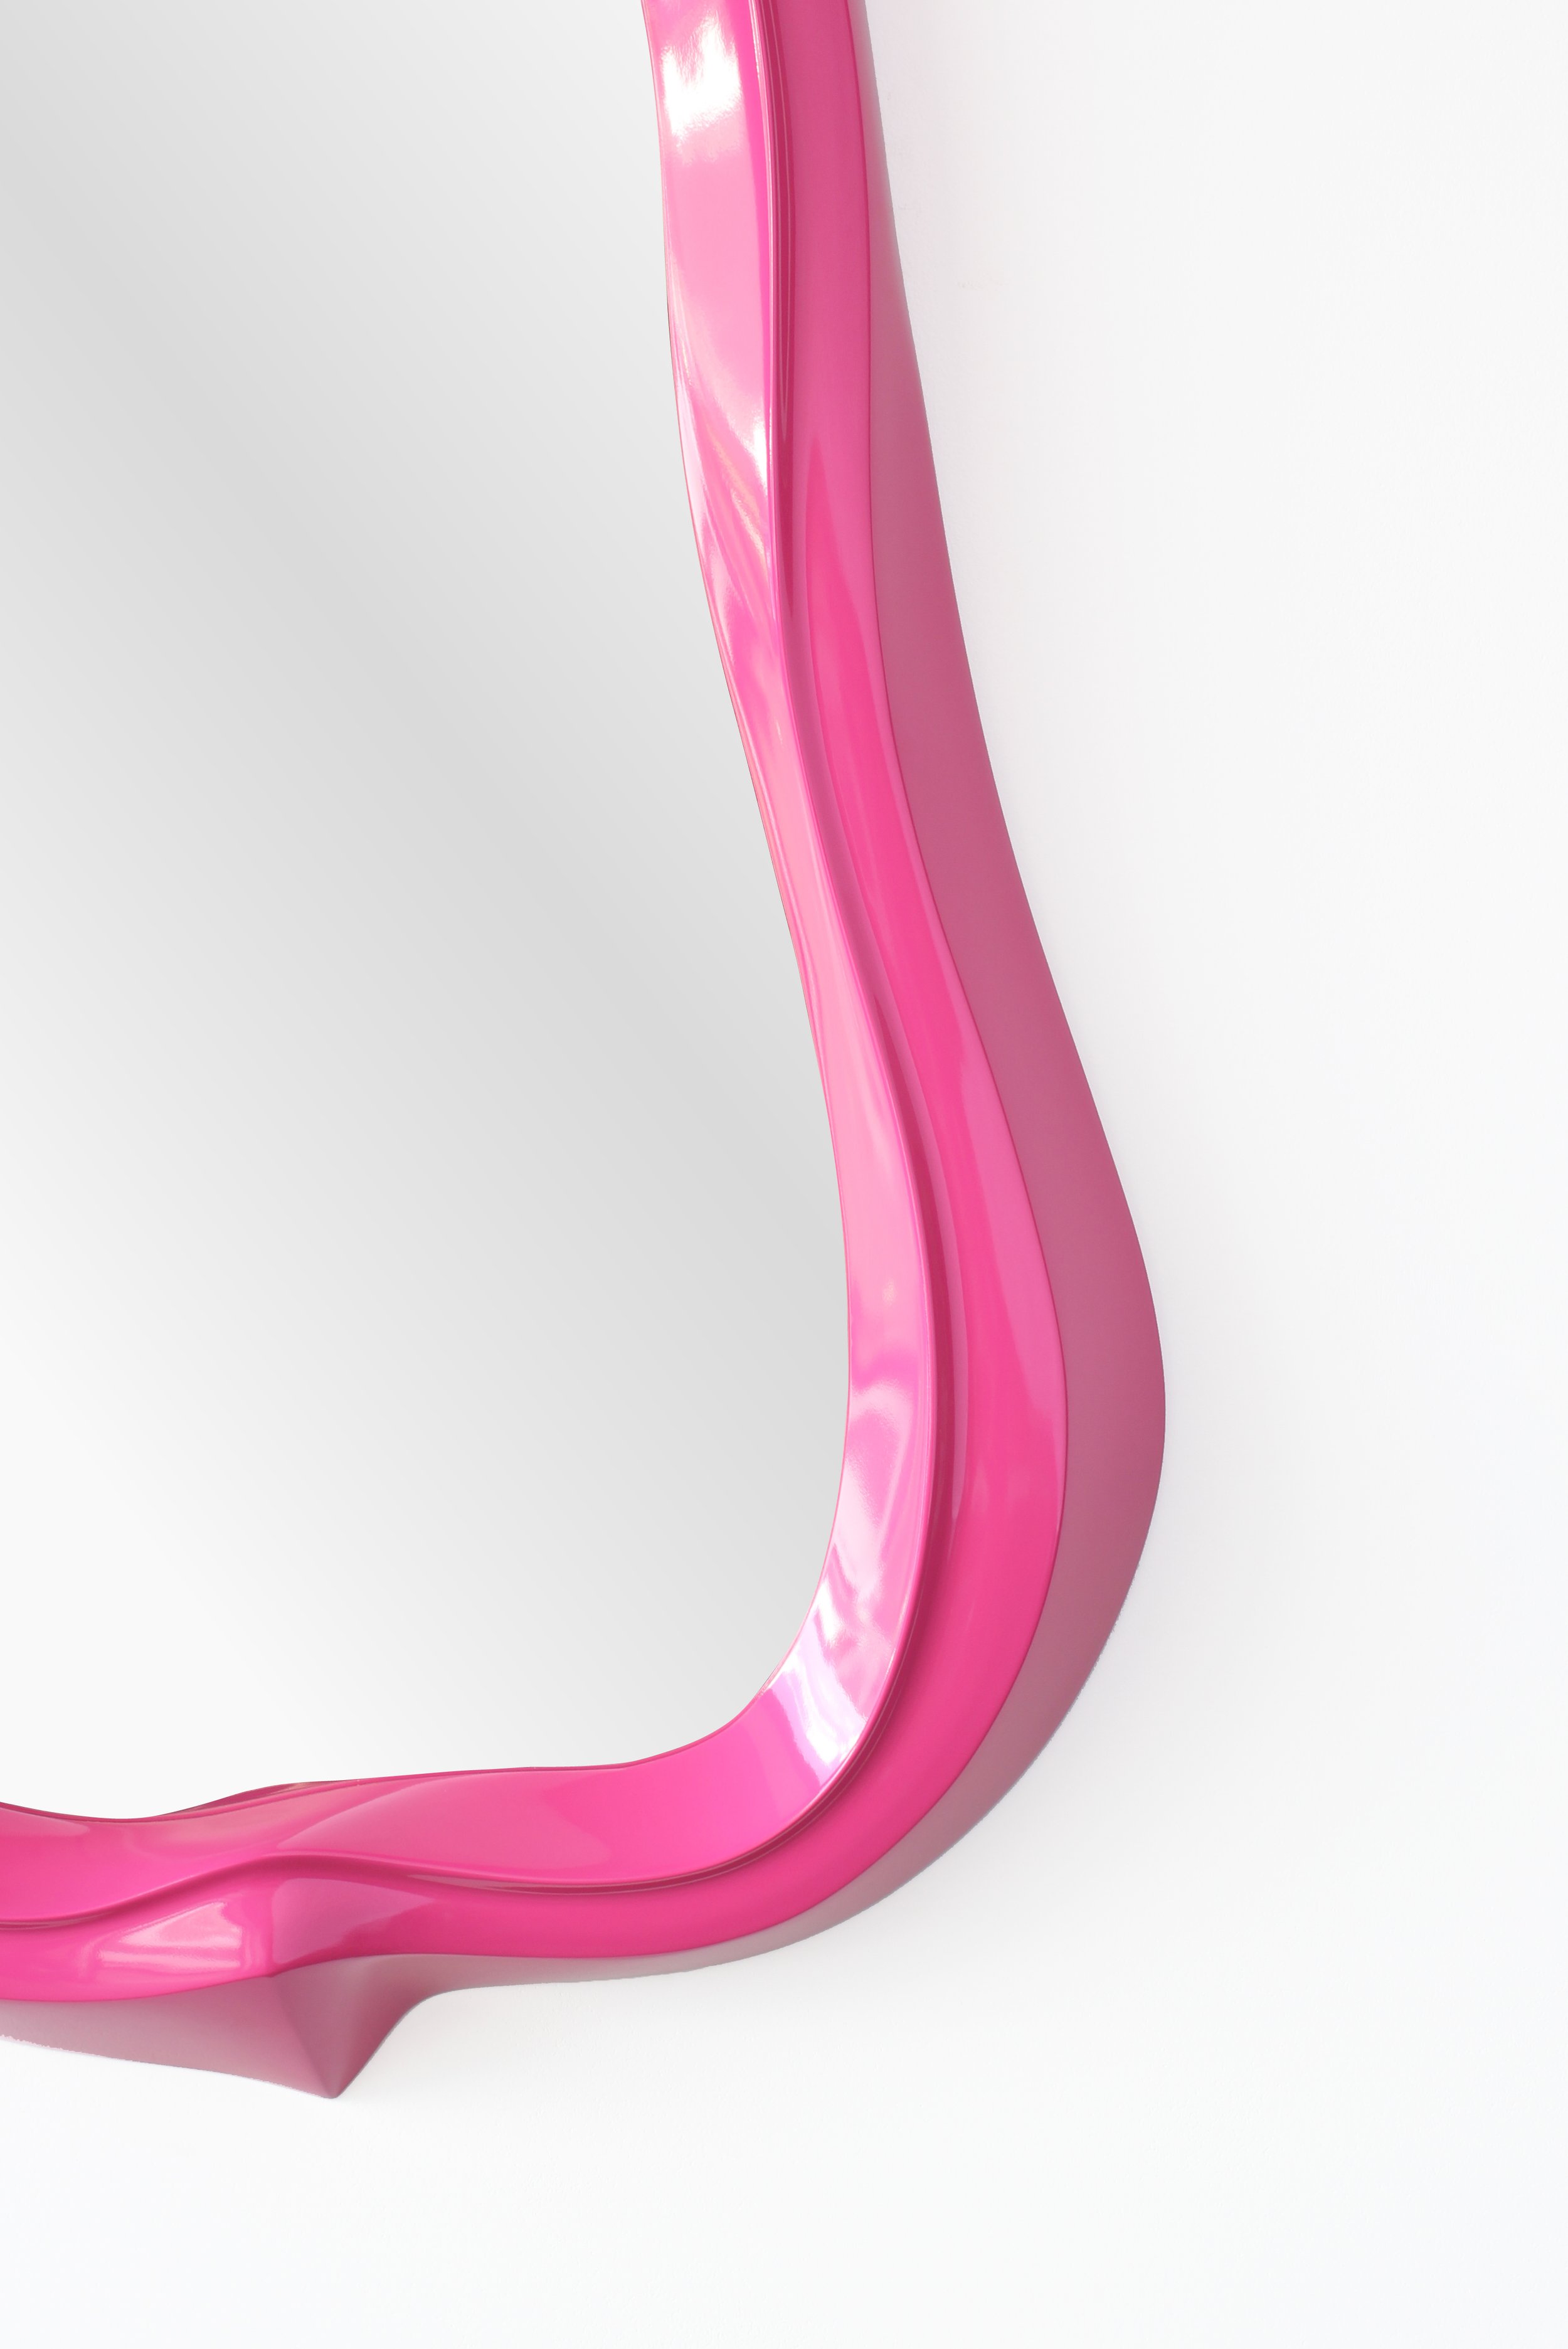 Gooey Mirror Detail (Pink)